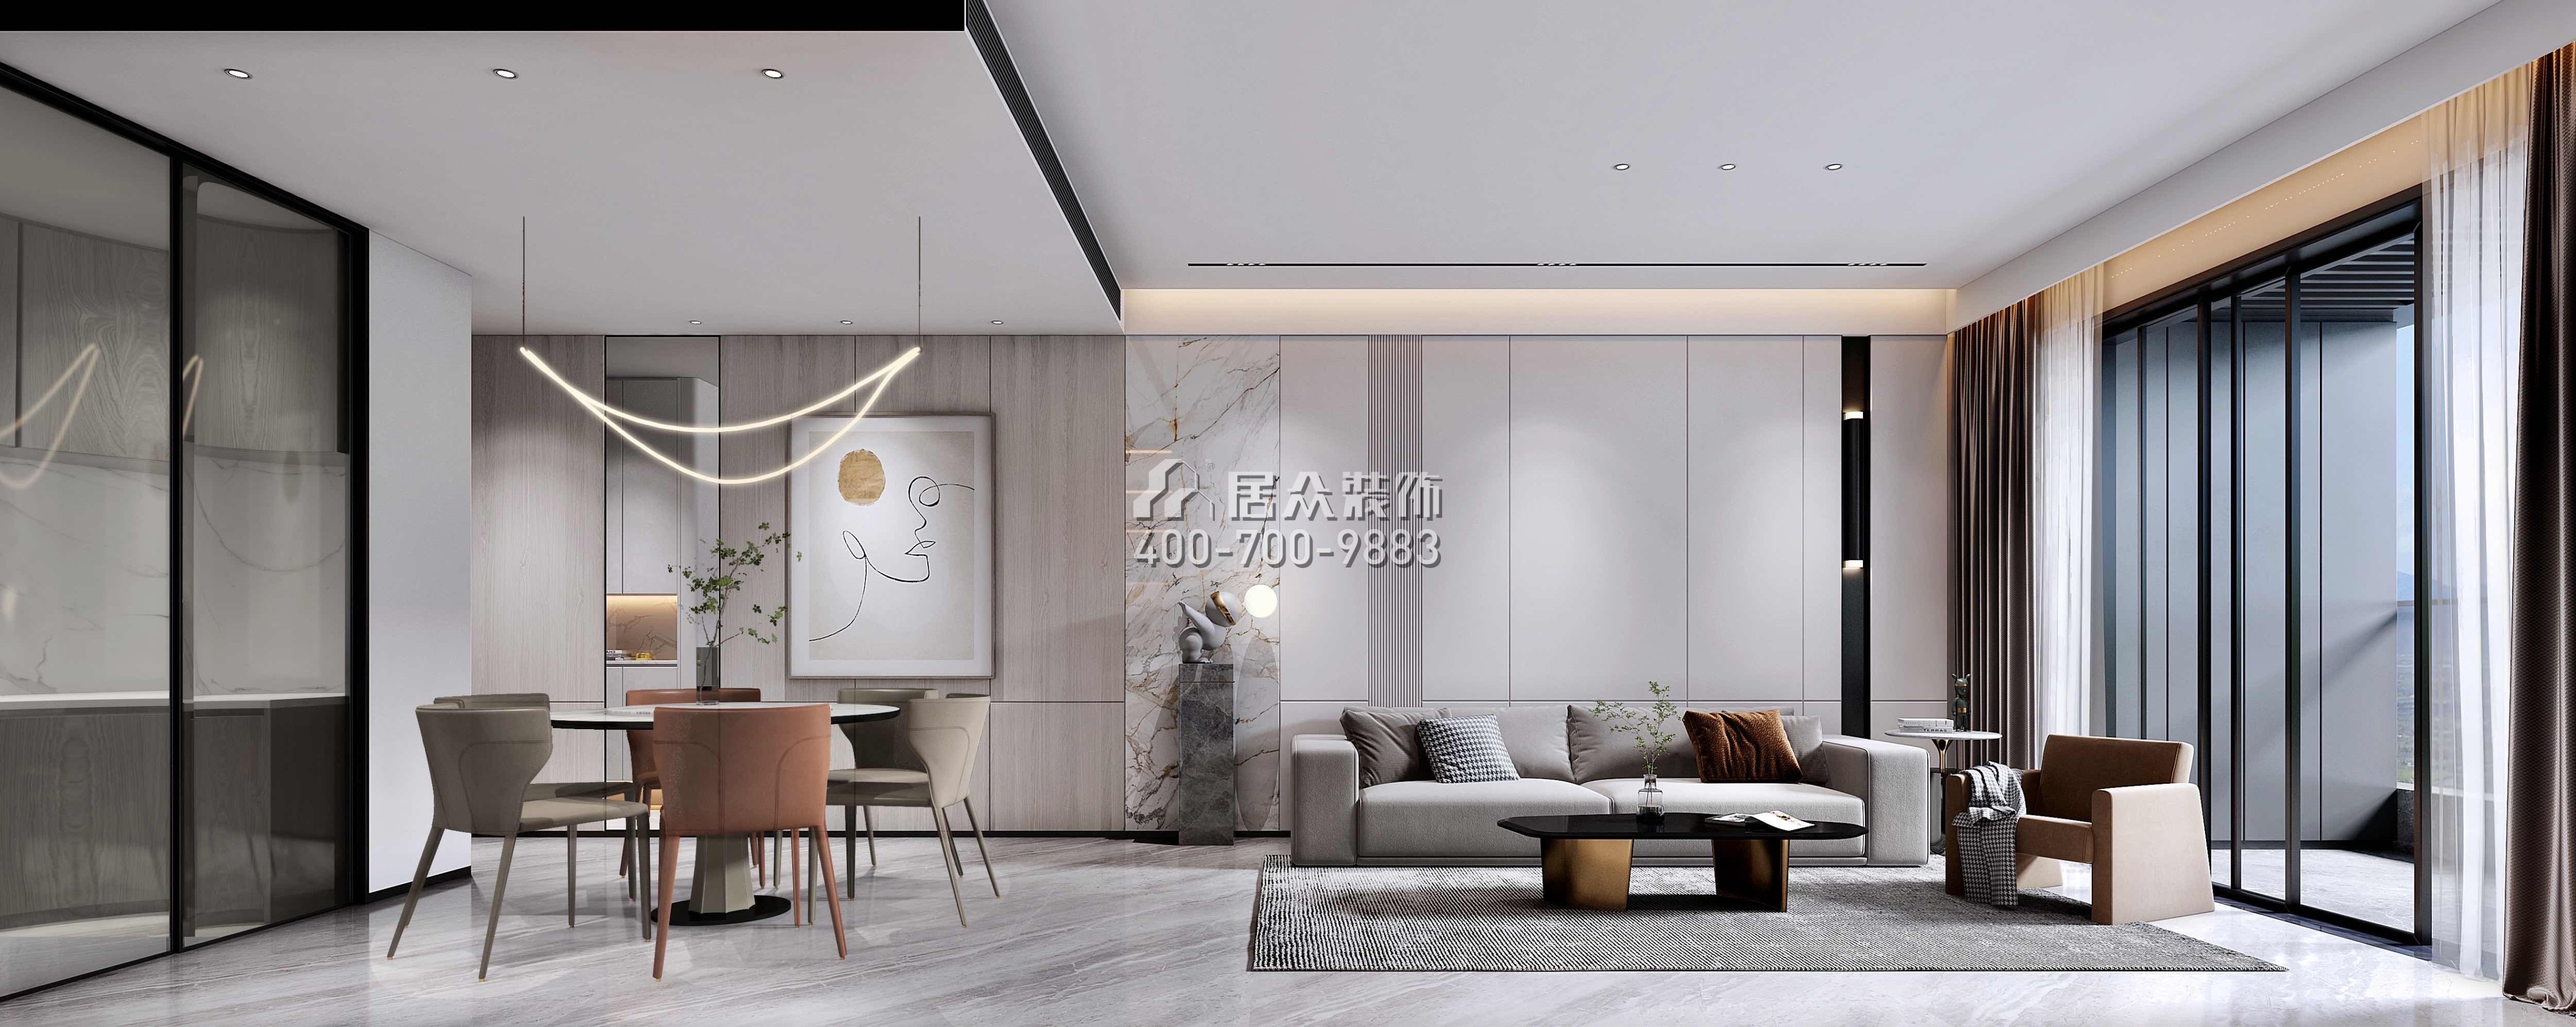 天健天骄南苑120平方米现代简约风格平层户型客厅装修效果图